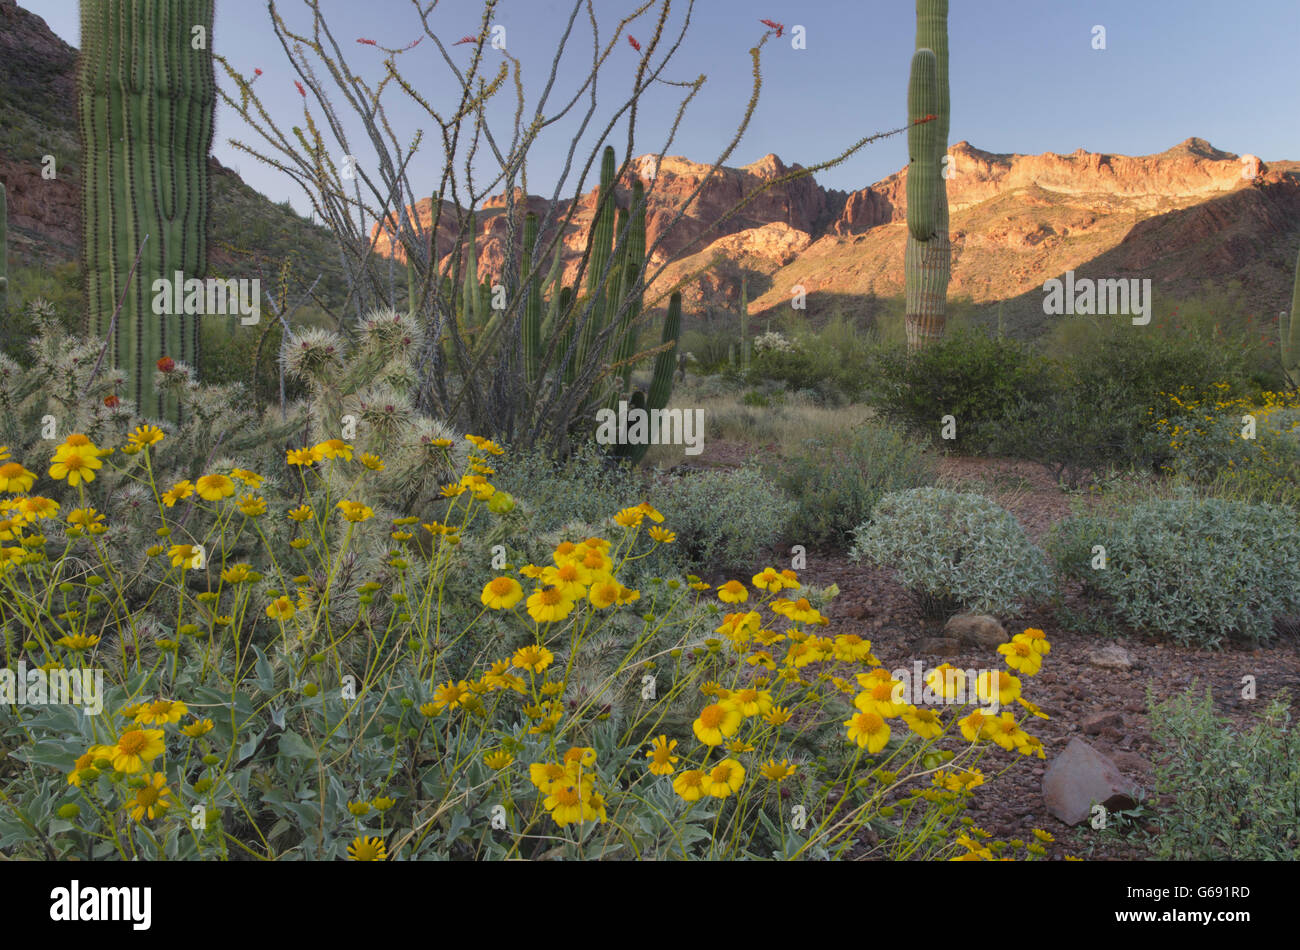 Brittlebush (Encelia farinosa),Deserto Sonoran, organo a canne Cactus Monumento Nazionale Arizona Foto Stock